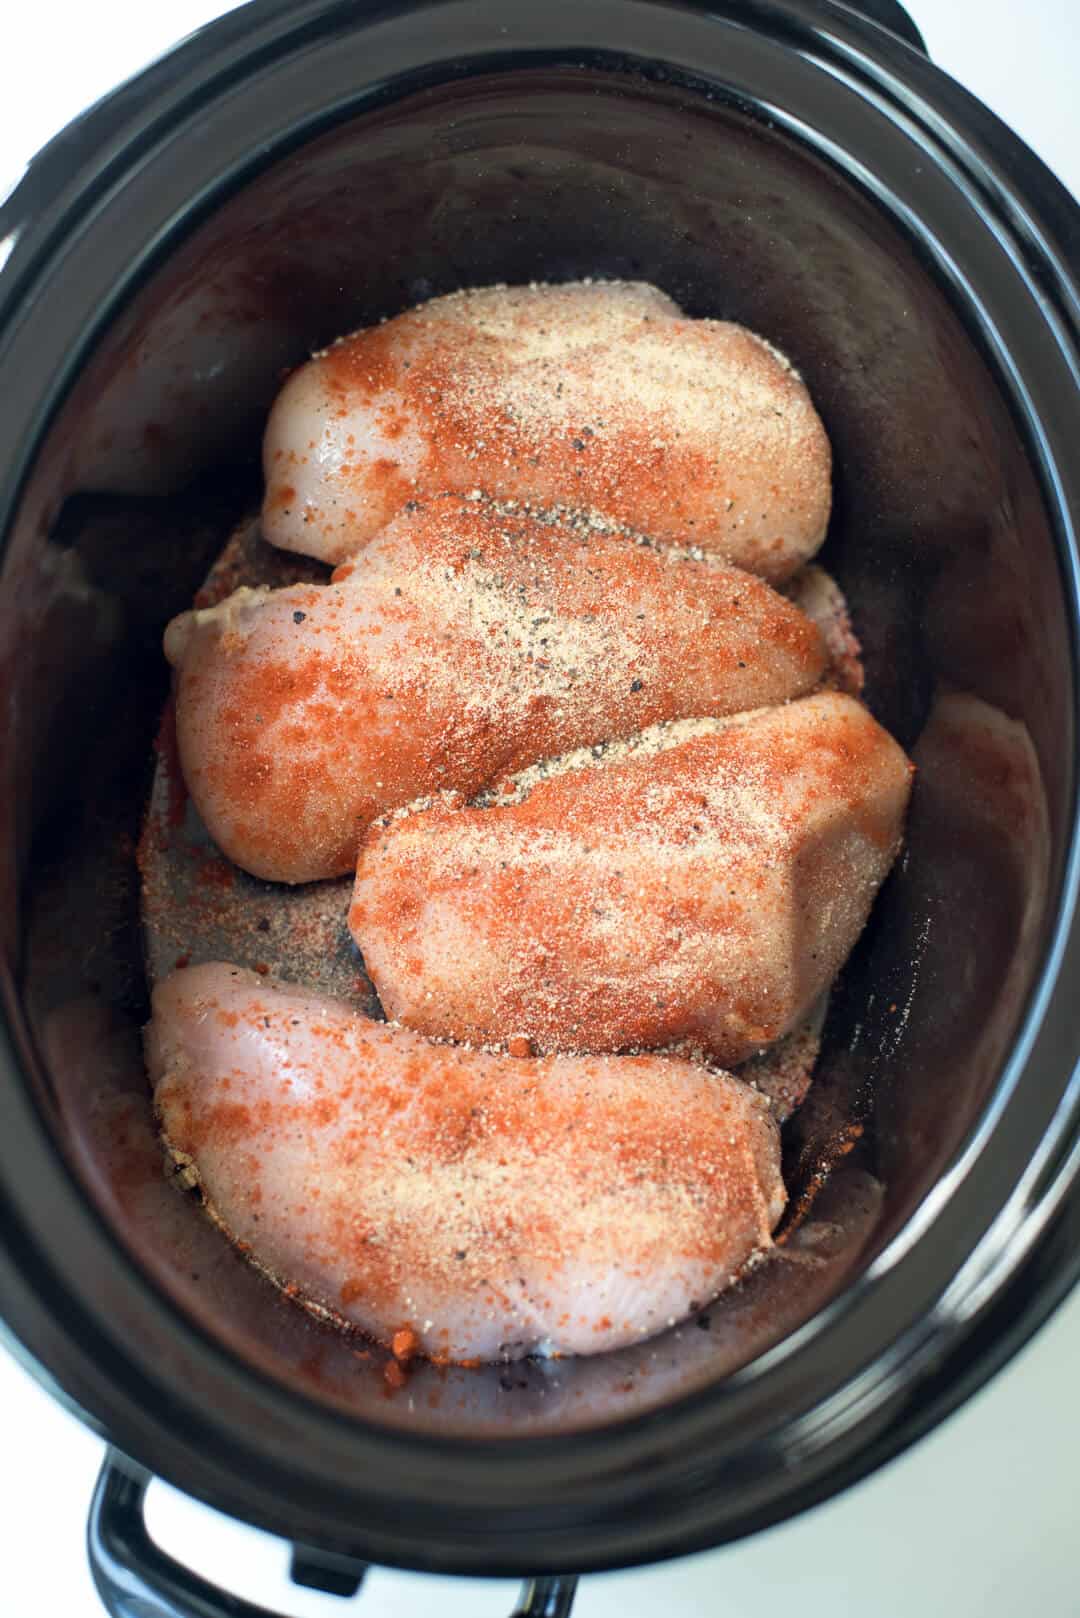 Seasoned chicken breasts in a slow cooker insert.